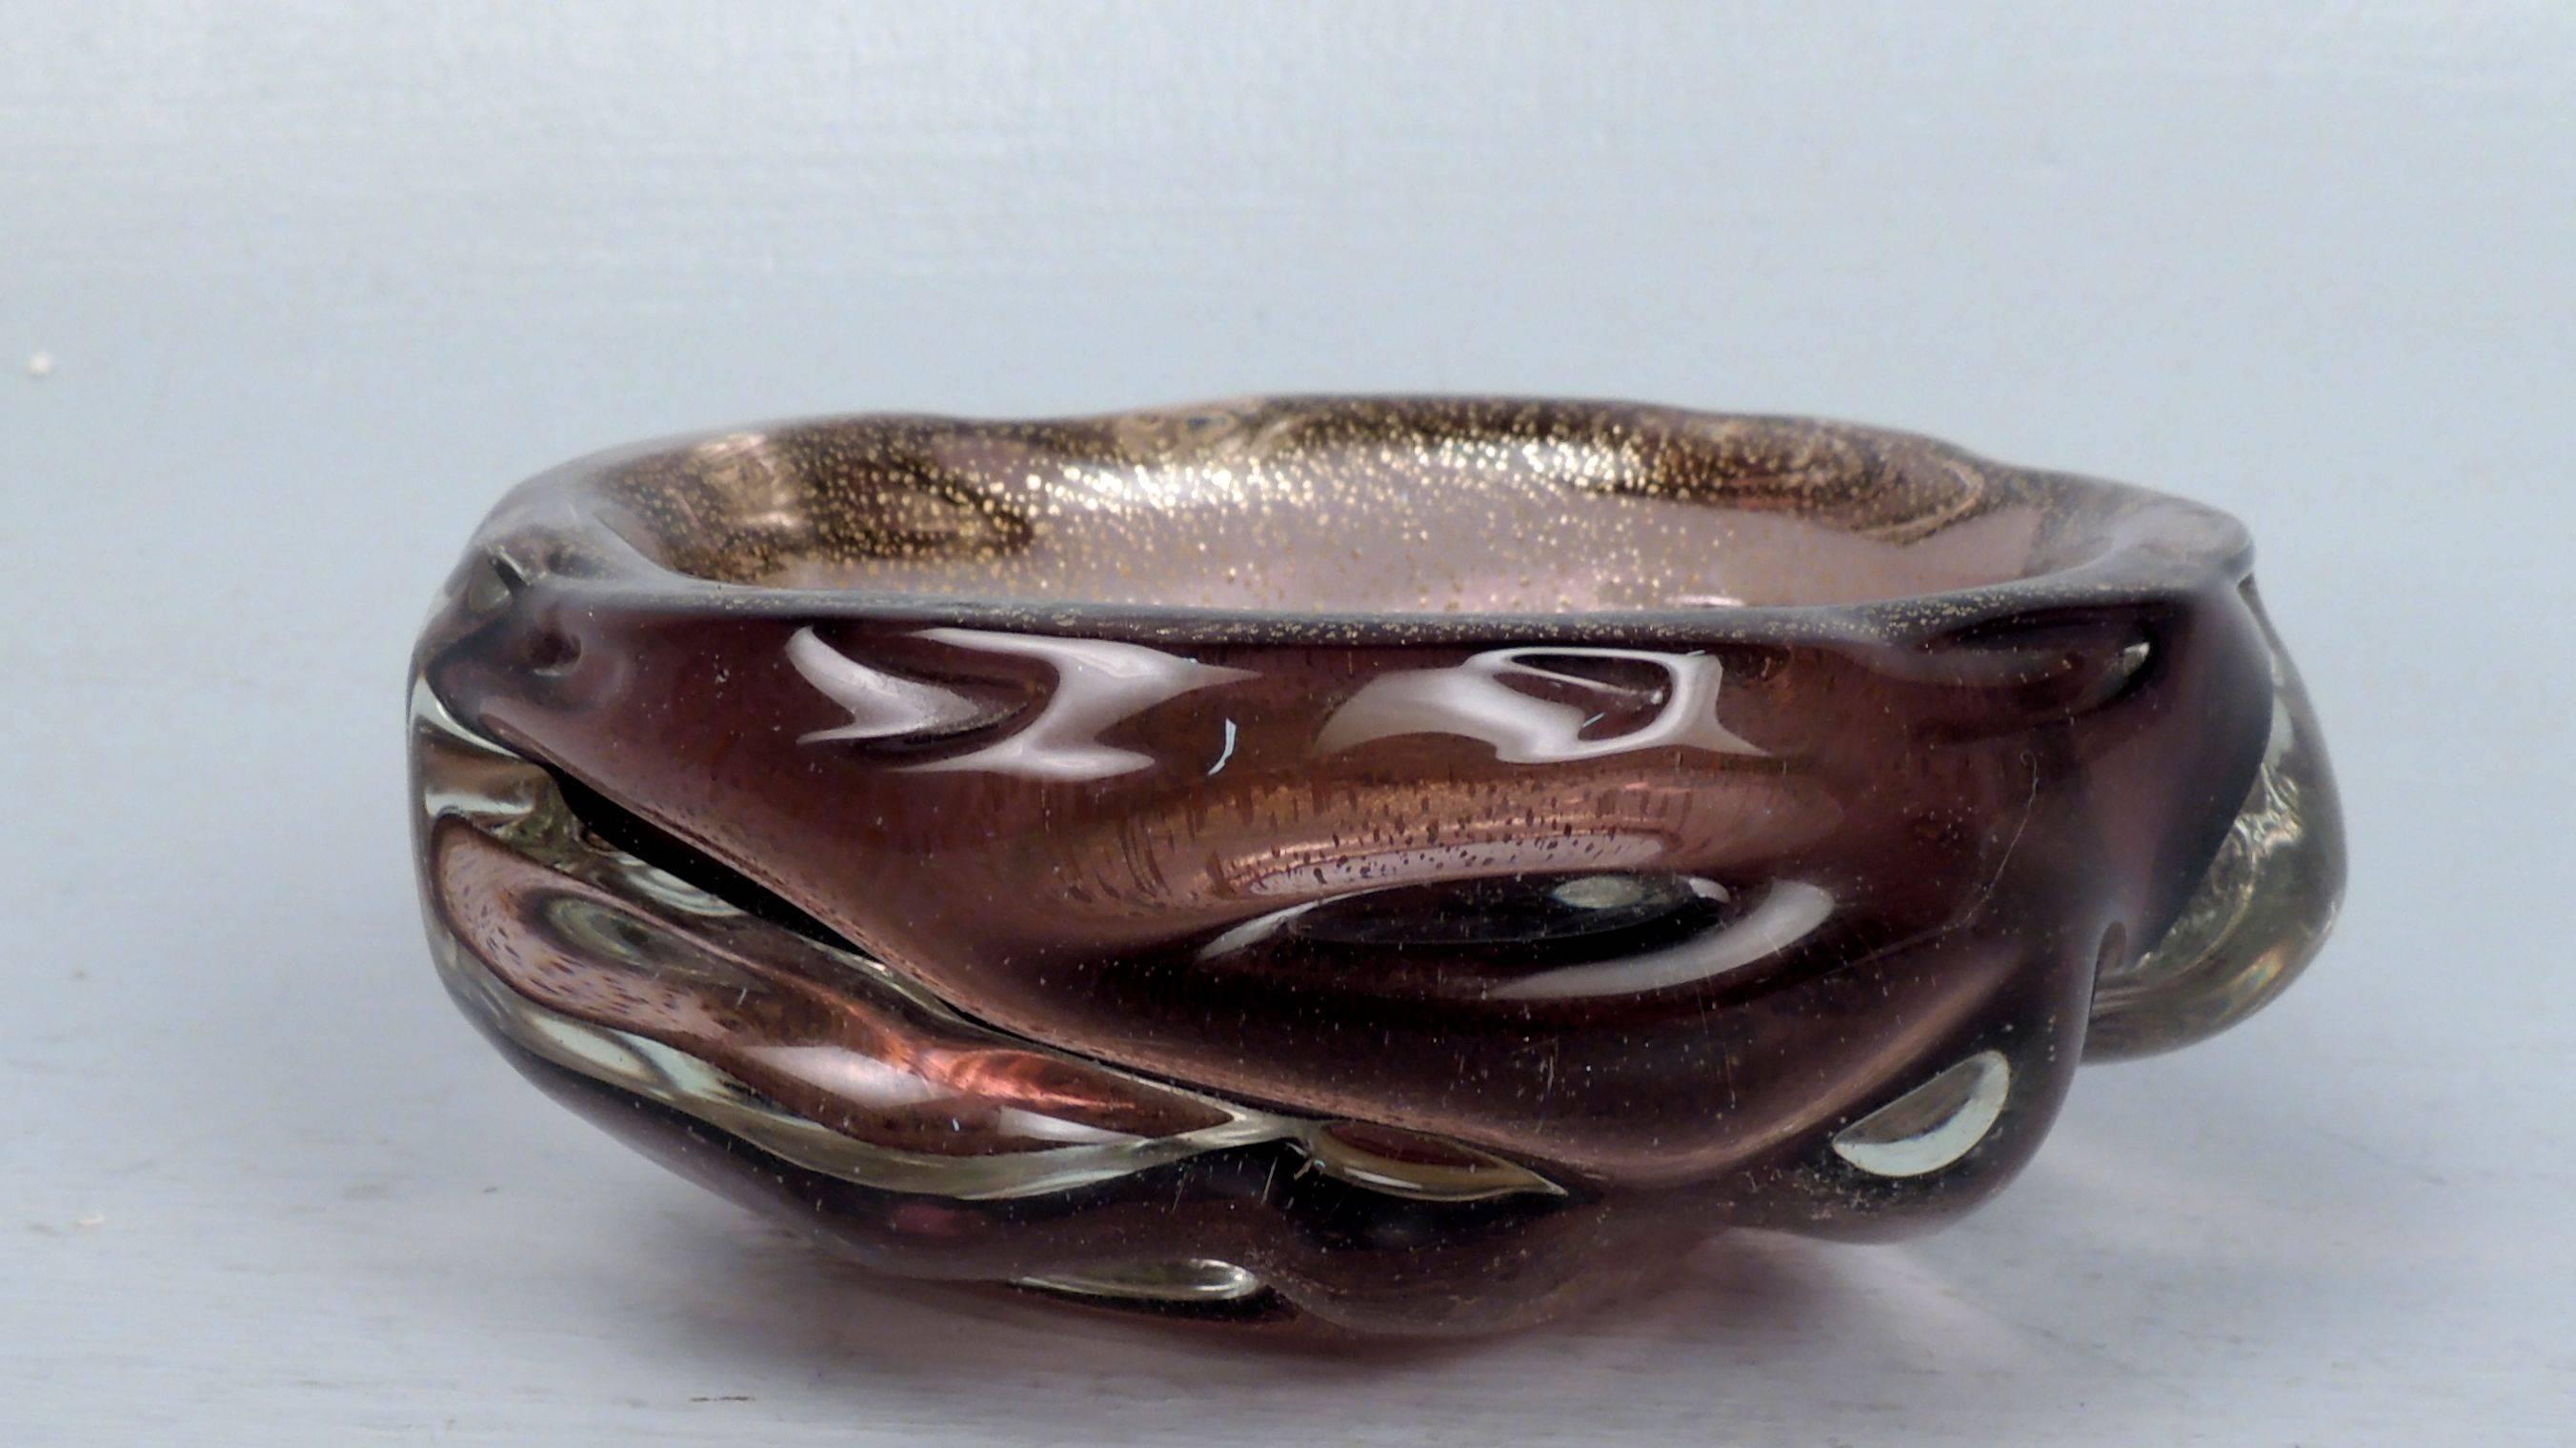 Eine gute Schale aus violettem Glas von Archimede Seguso mit Einschlüssen von Goldflecken. 

Mitte des 20. Jahrhunderts.

Auf dem Sockel ist ein Teil des Etiketts 